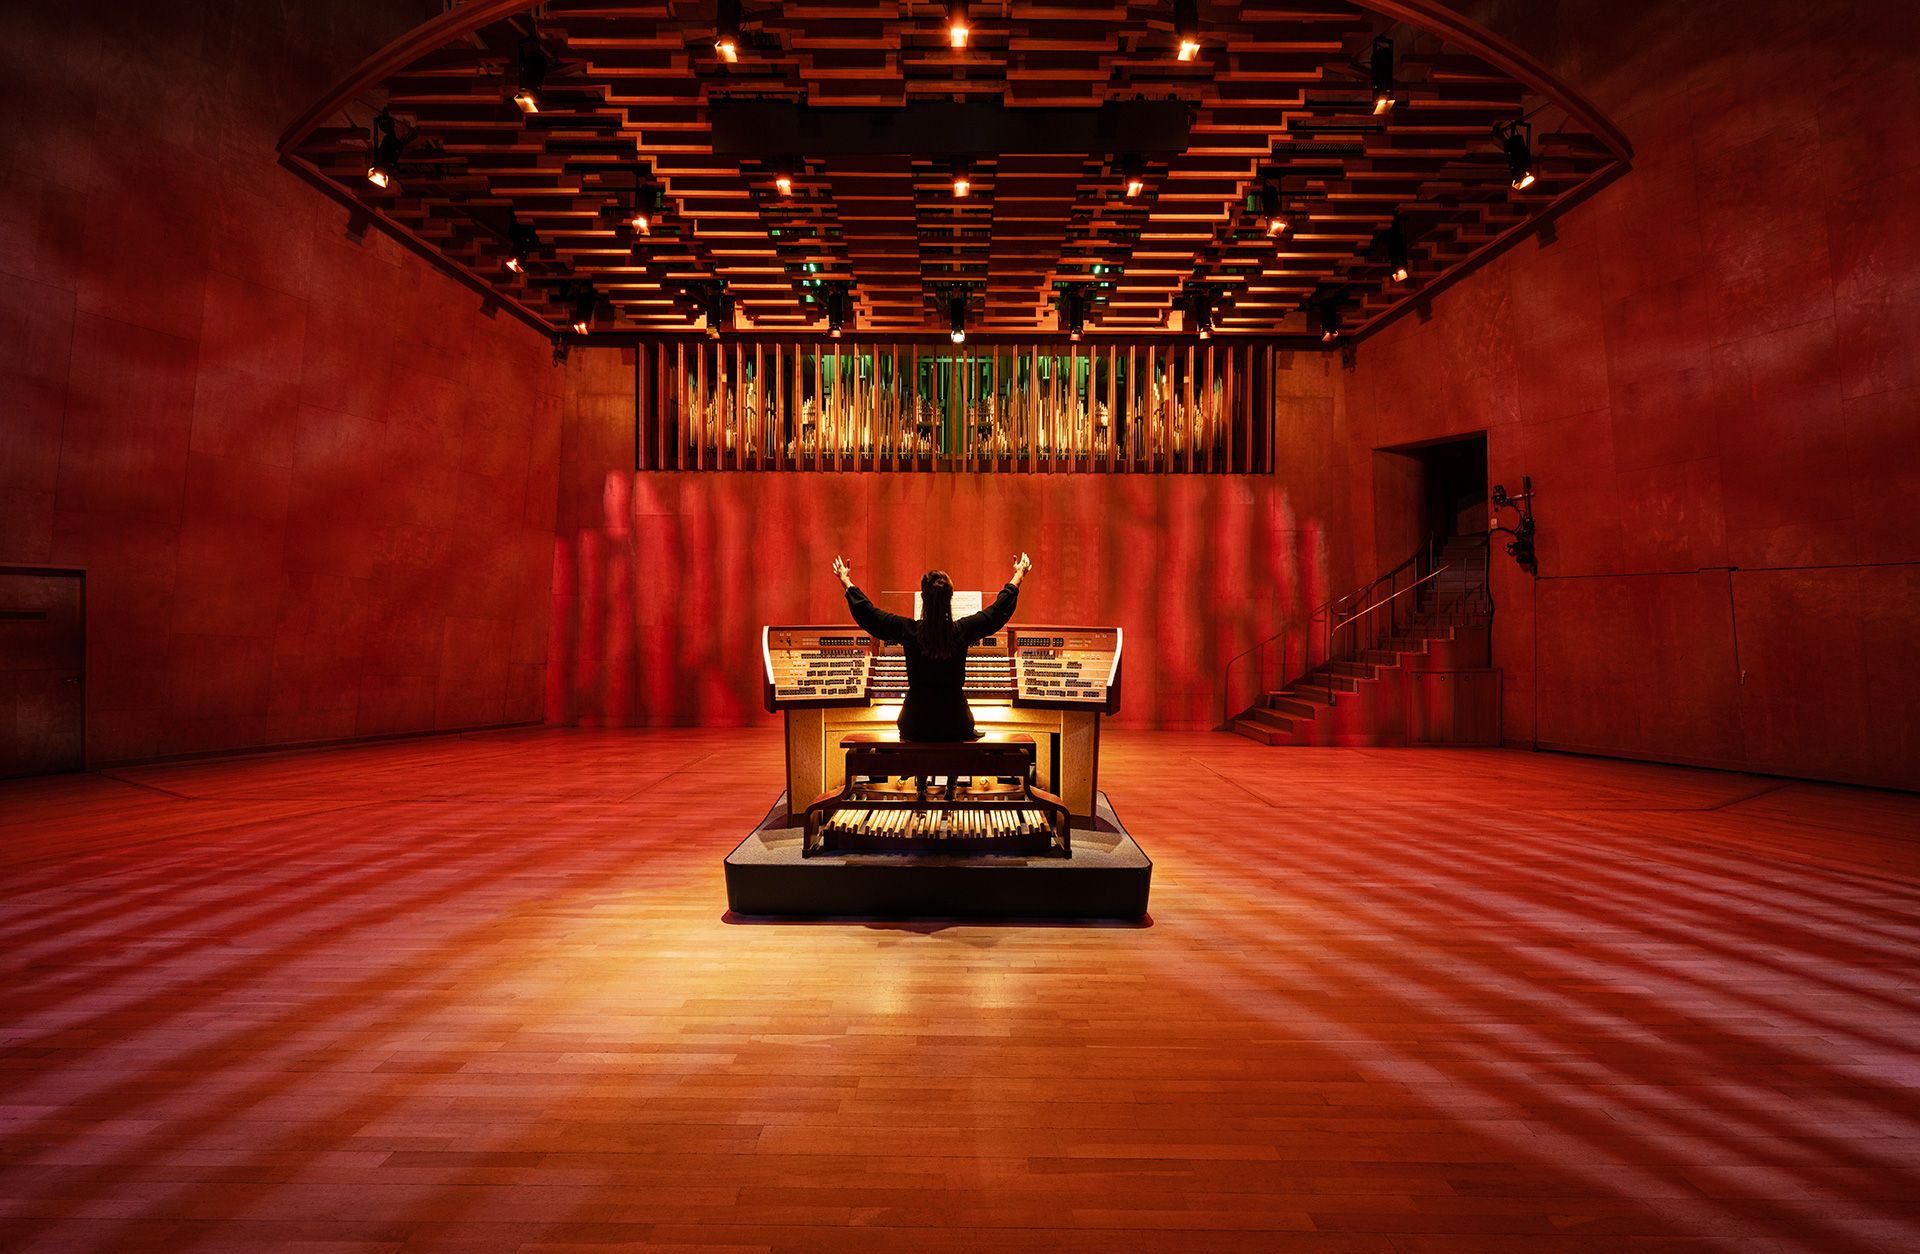 Organist syns bakifrån med händerna utsträckta i luften sittandes vid instrumentet. Salen är ljusatt i rött och gult.